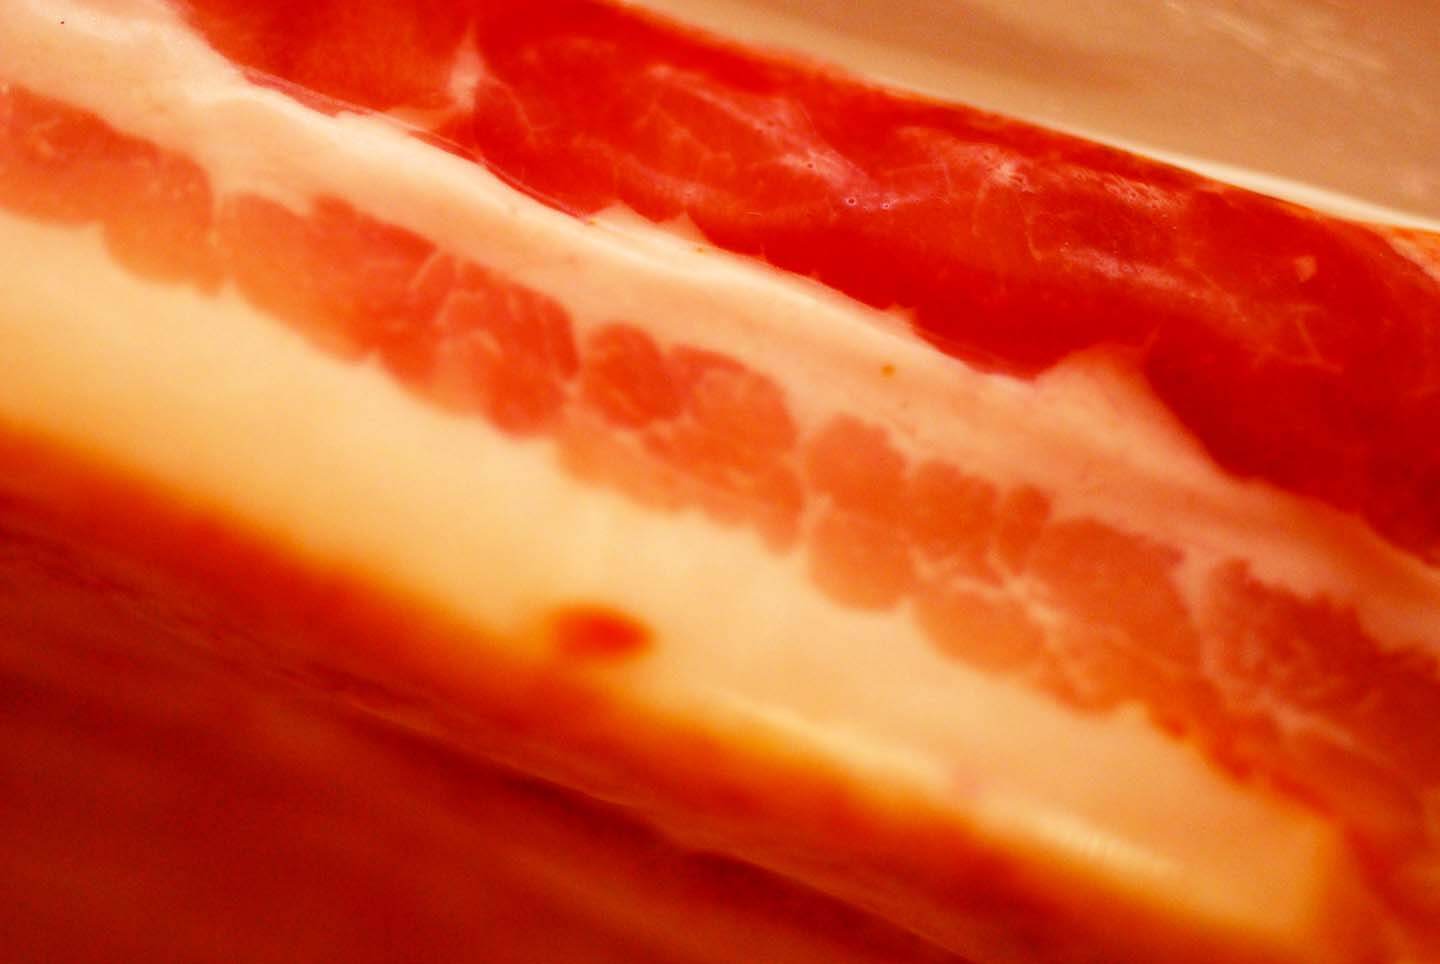 Bacon grease DSC 1412